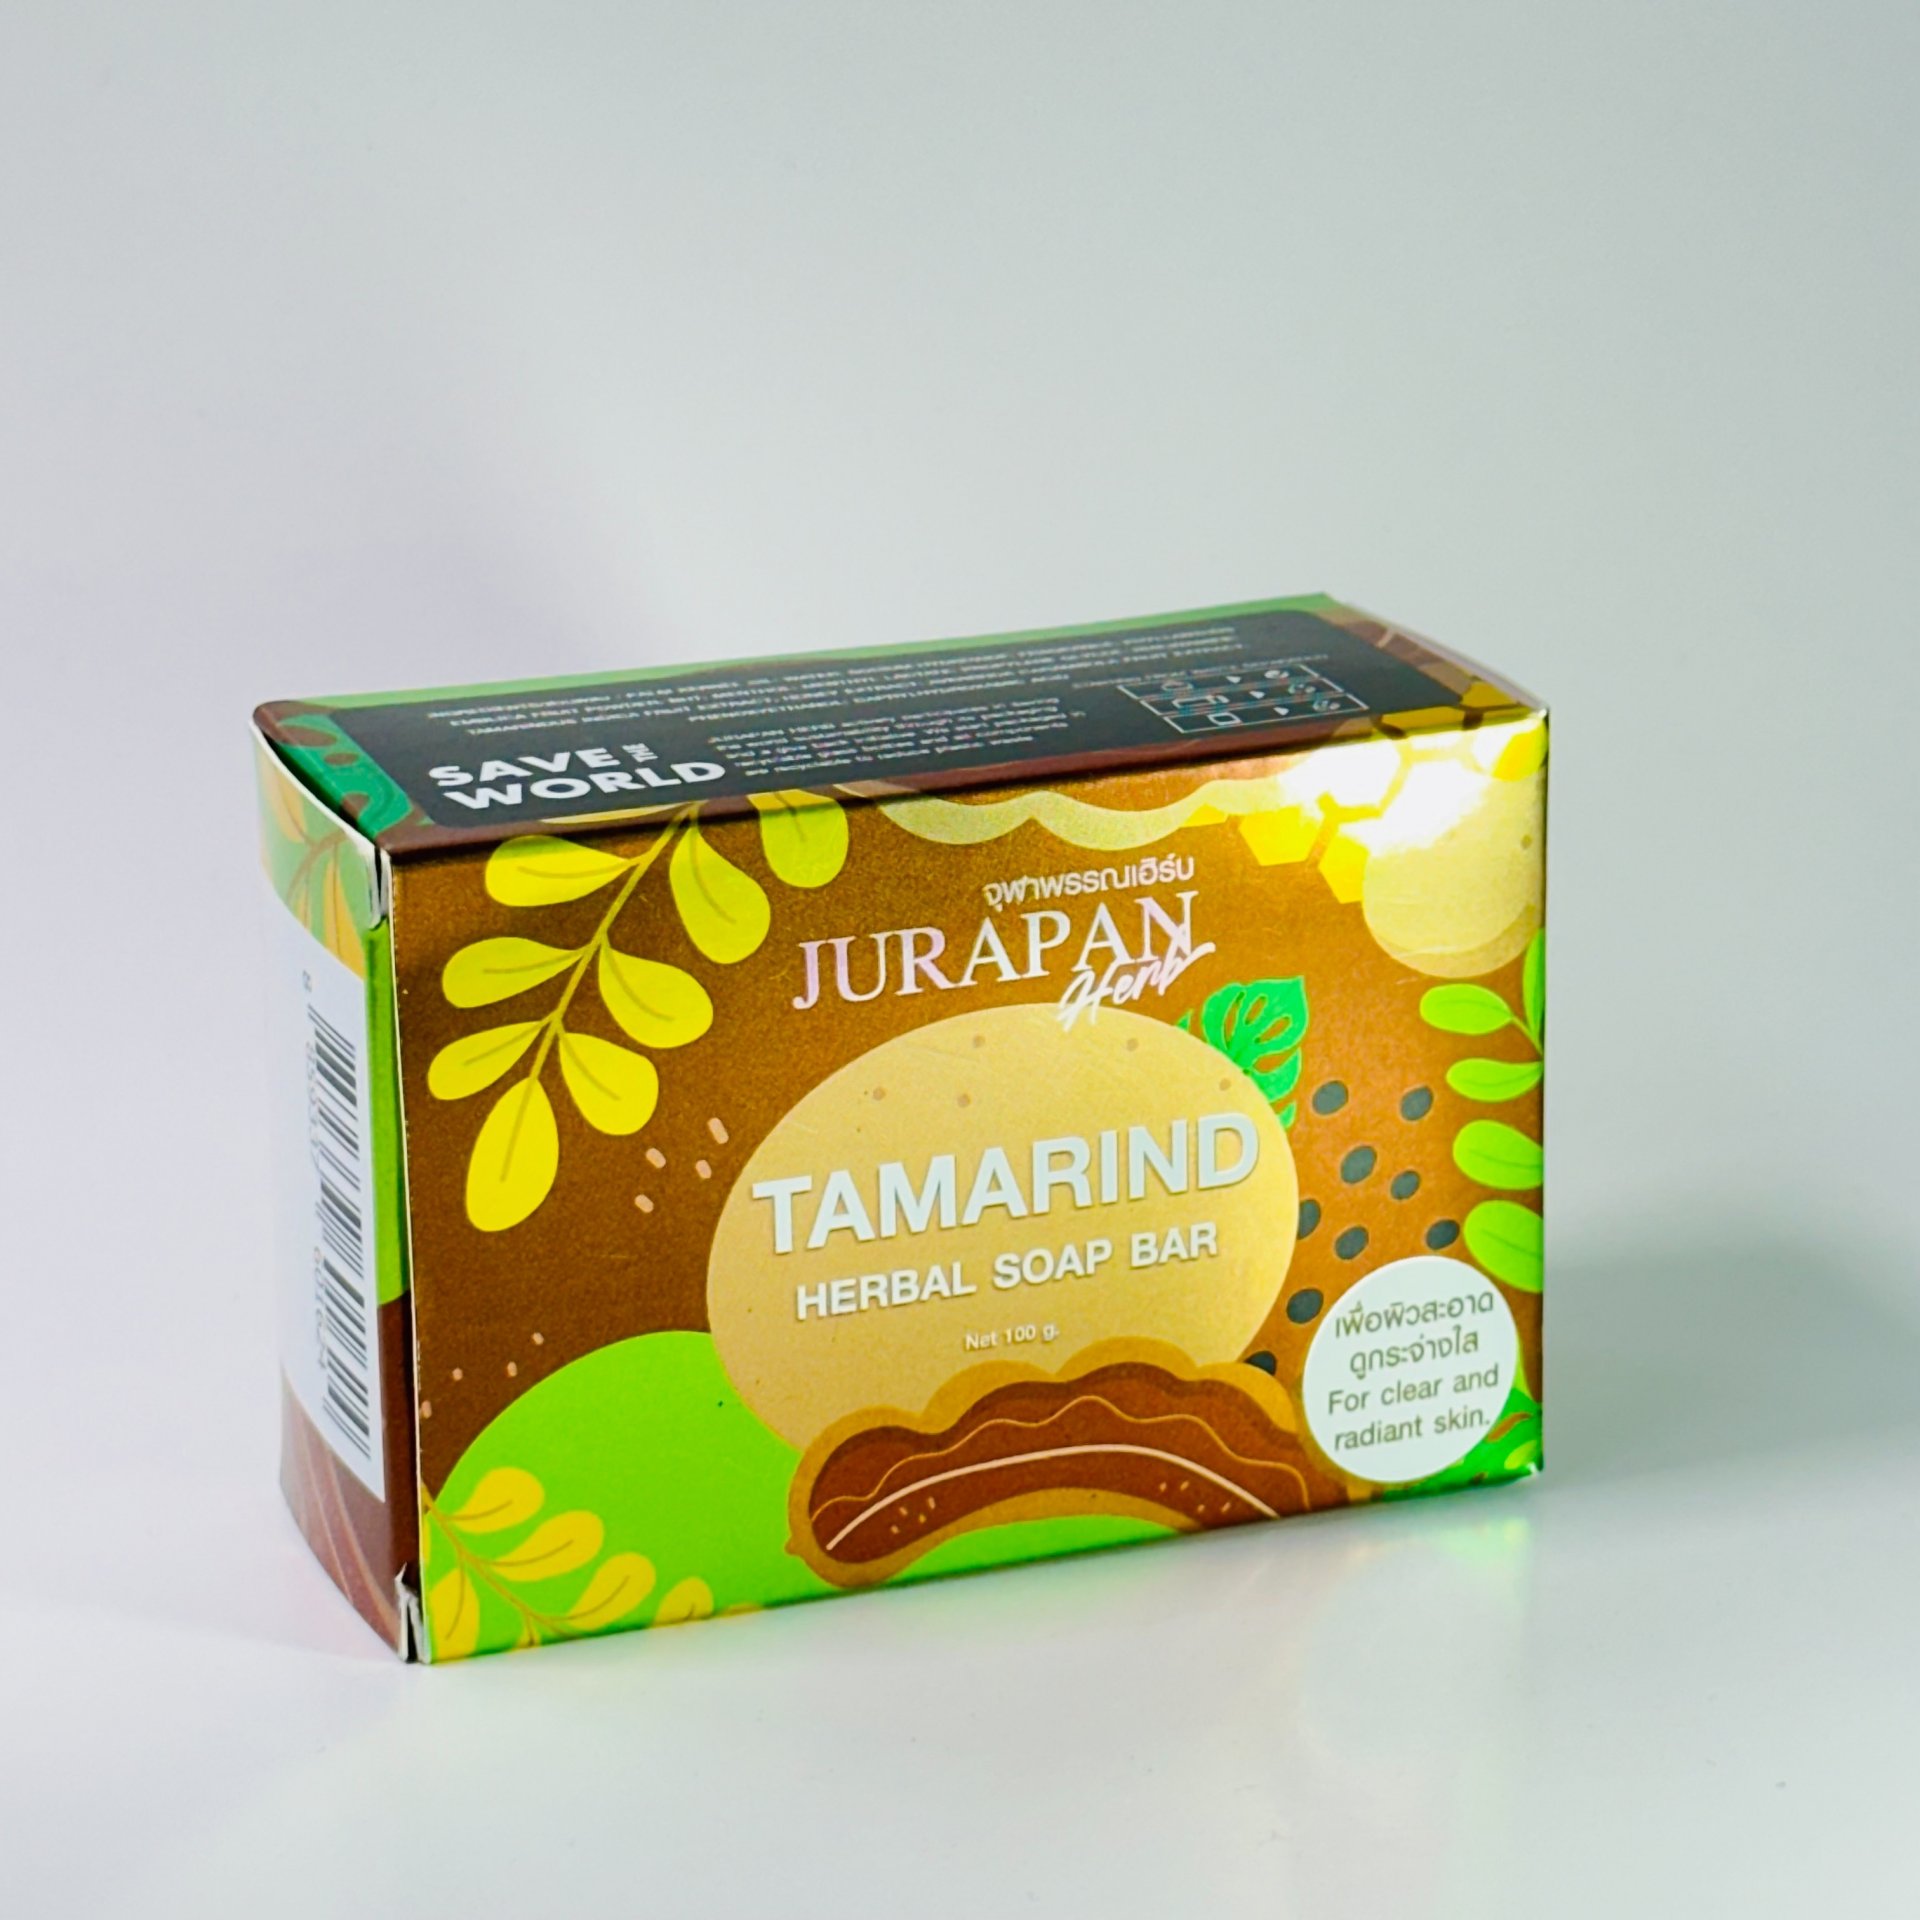 Tamarind Herbal Soap Bar